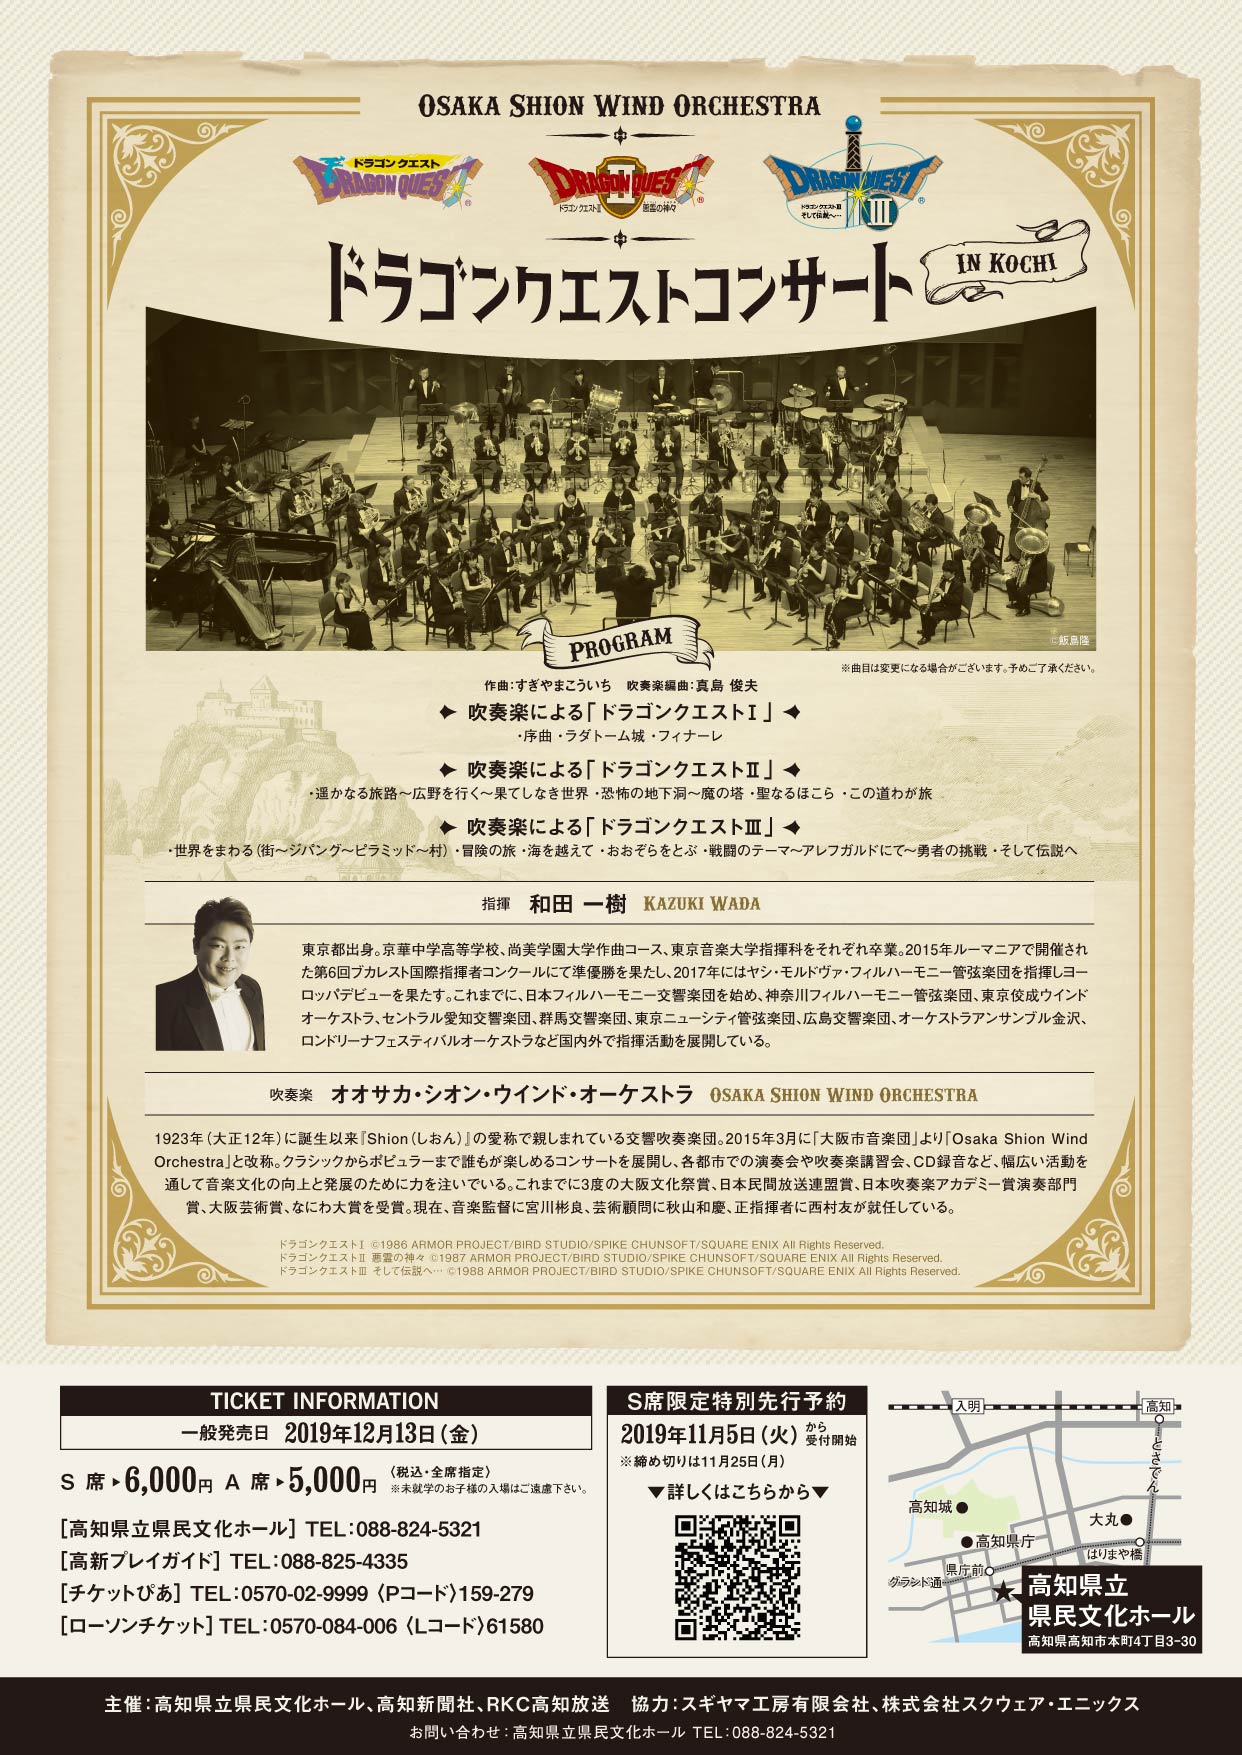 公演中止 ドラゴンクエストコンサート In 高知 コンサート情報 Osaka Shion Wind Orchestra 大阪市音楽団